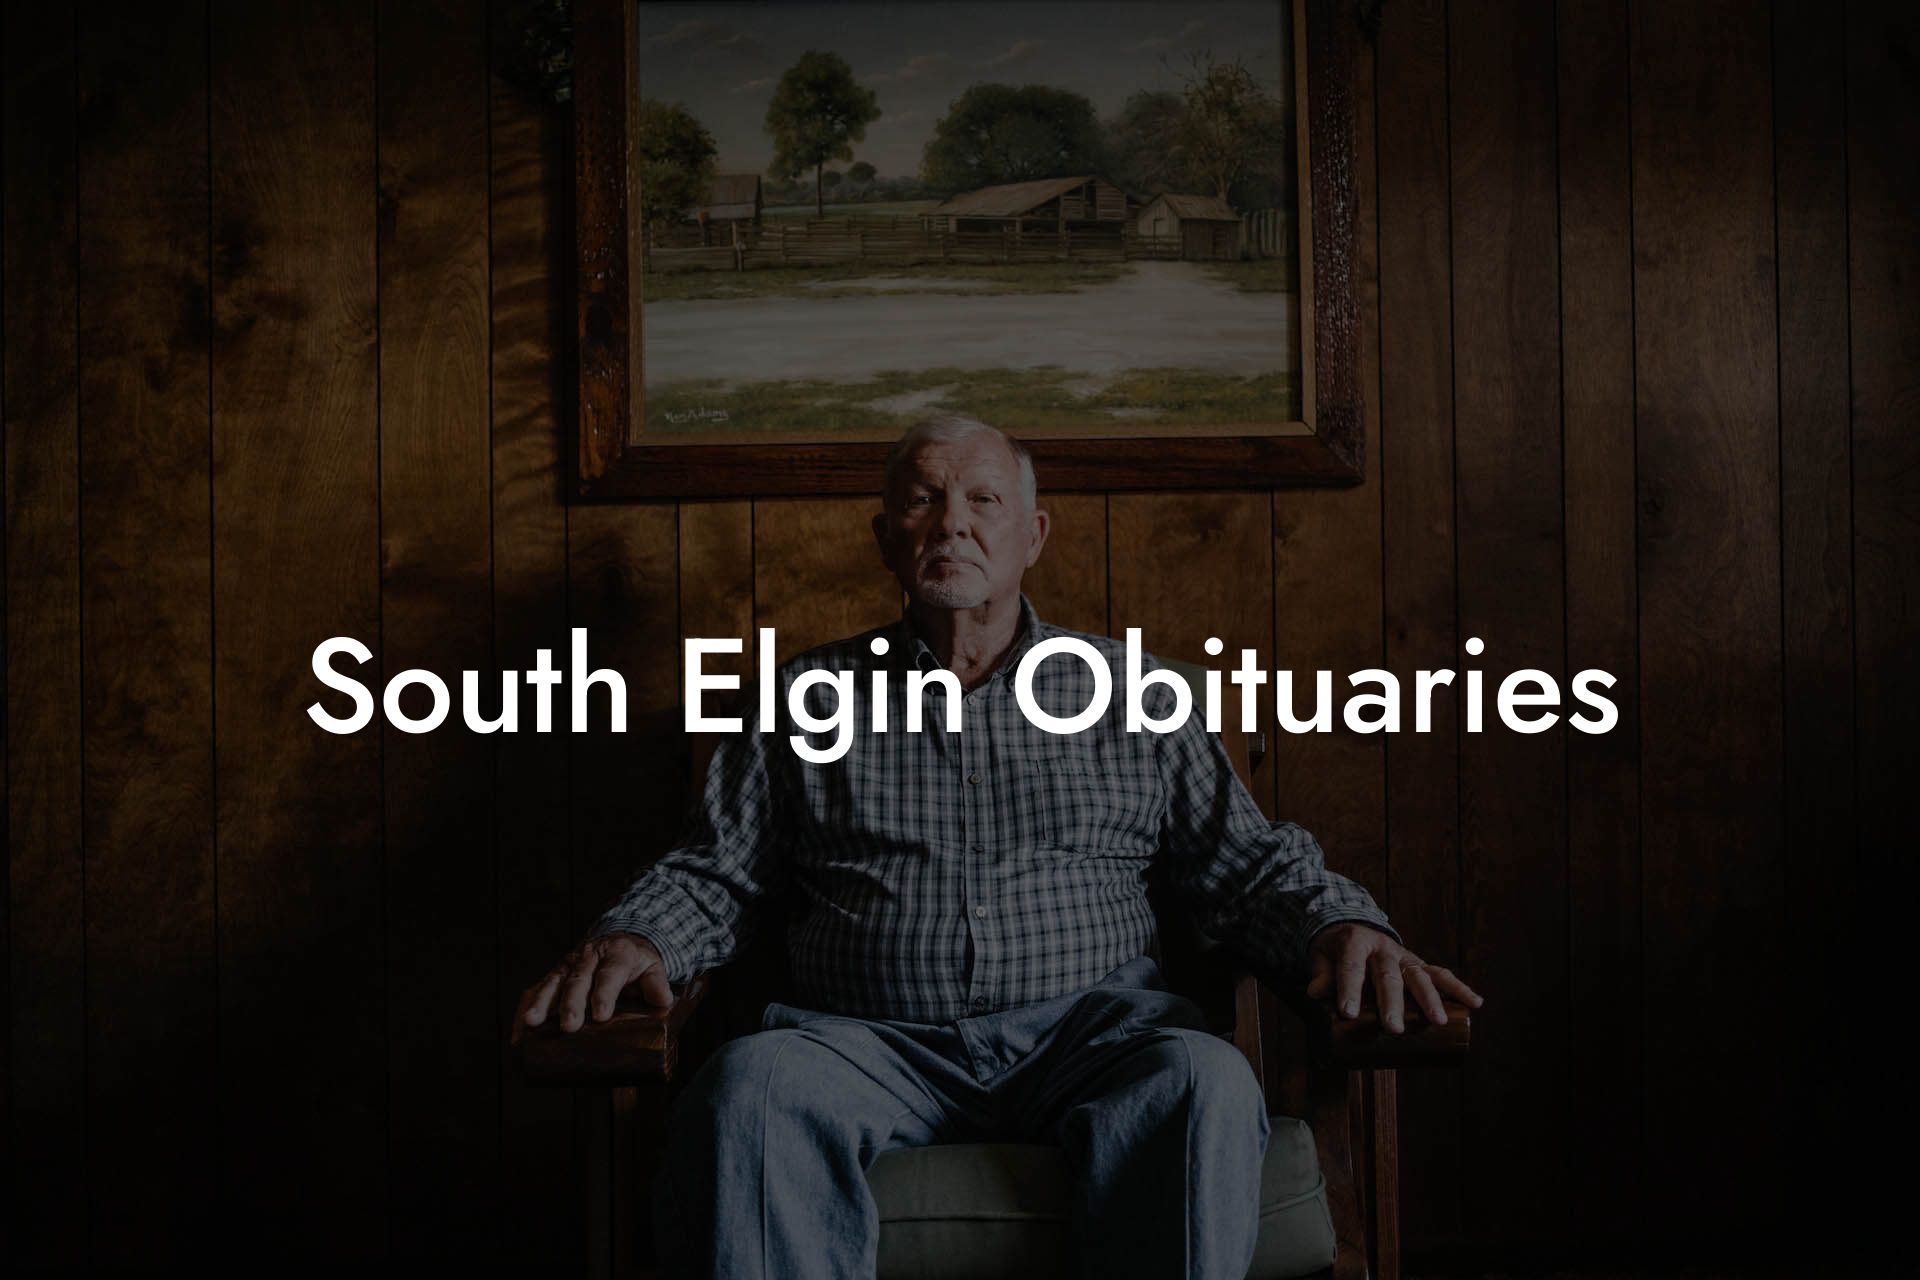 South Elgin Obituaries